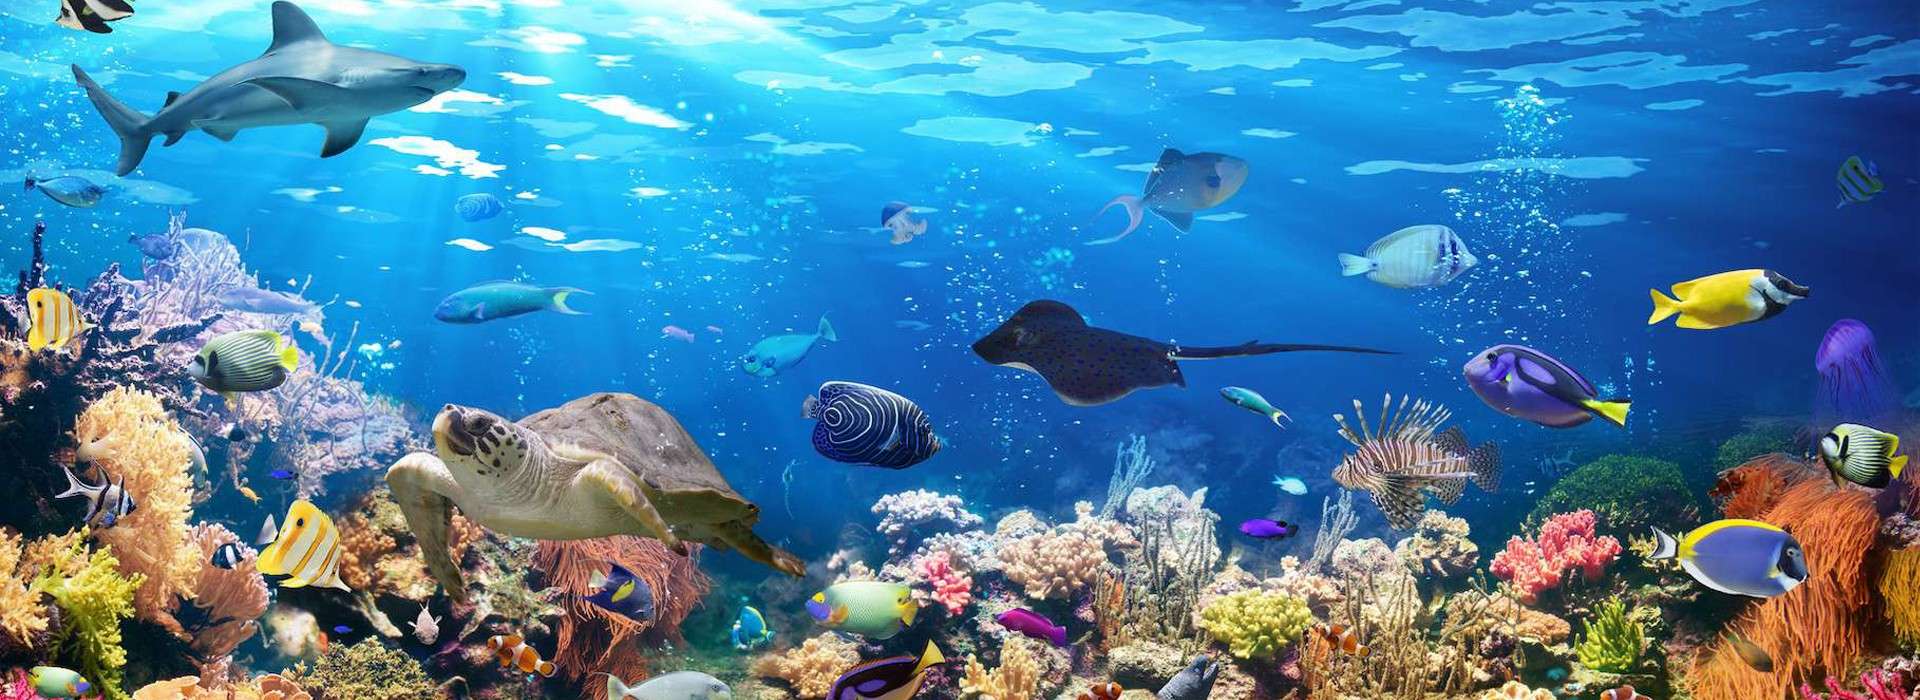 Slider d'images de l'animation Visio animation  3/8 ans  1 heure "sous l 'océan"